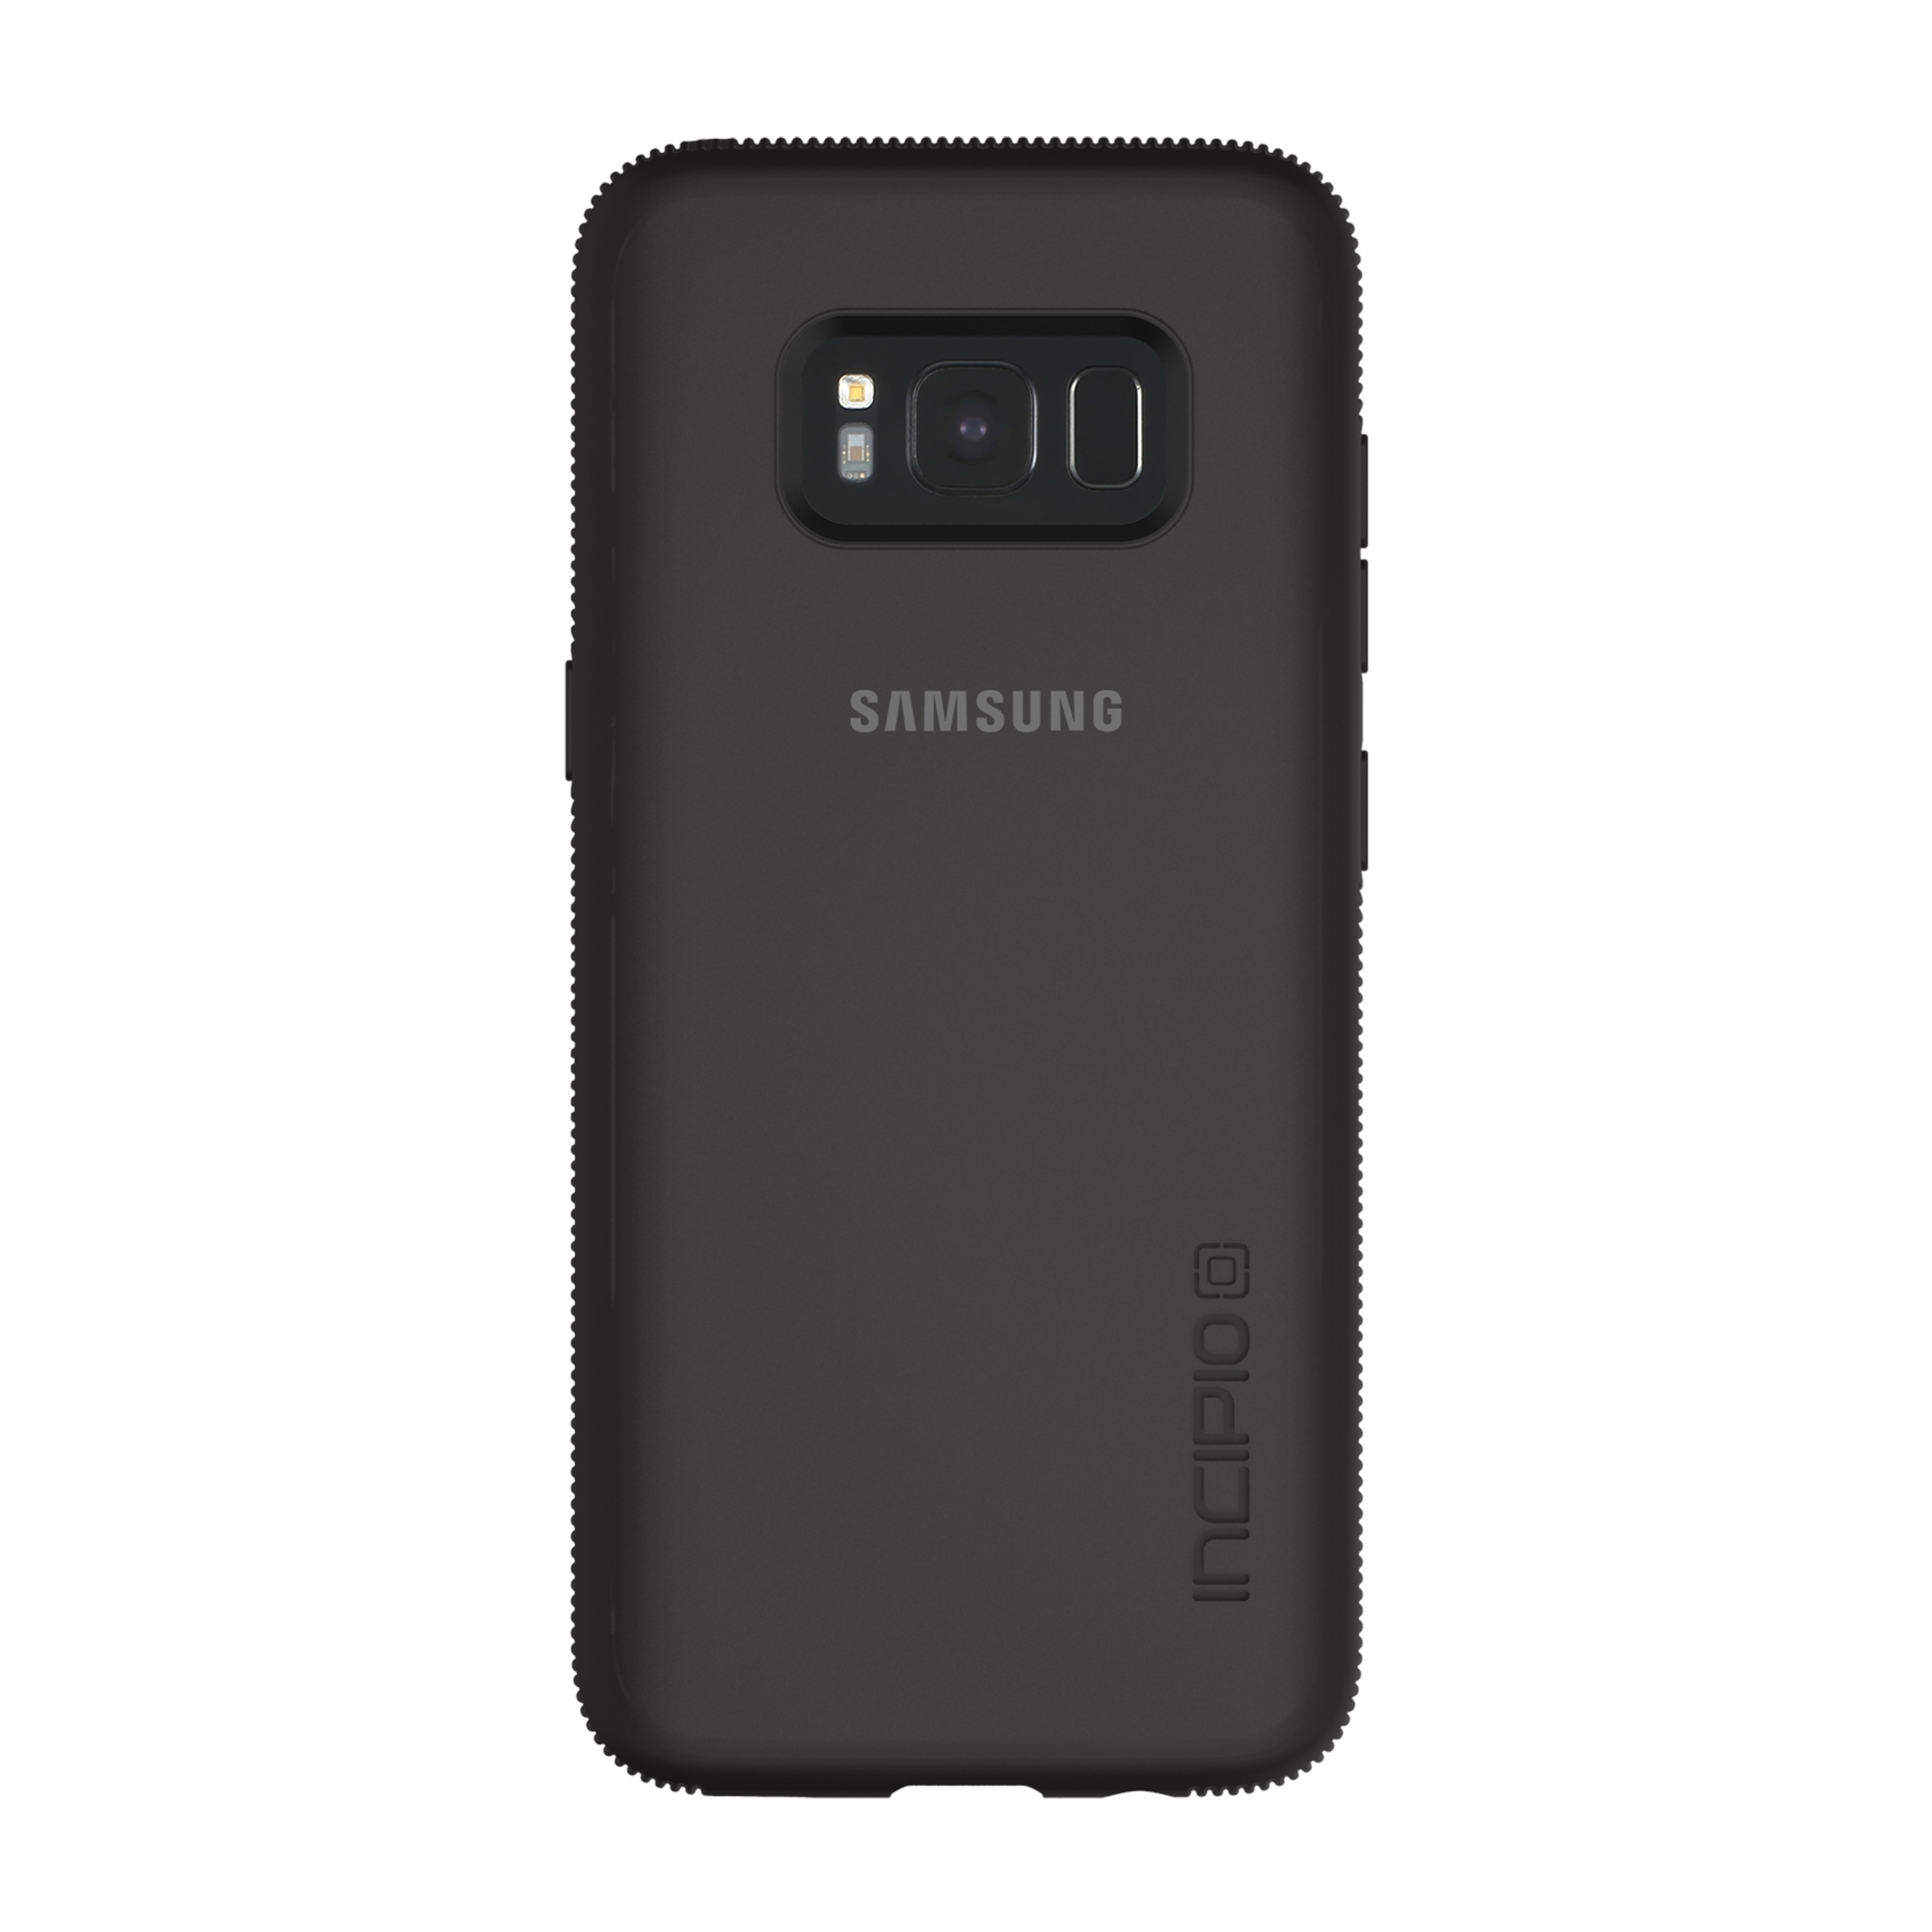 Incipio for Galaxy Black Mobile Accessories - SA-832-BLK | Samsung US